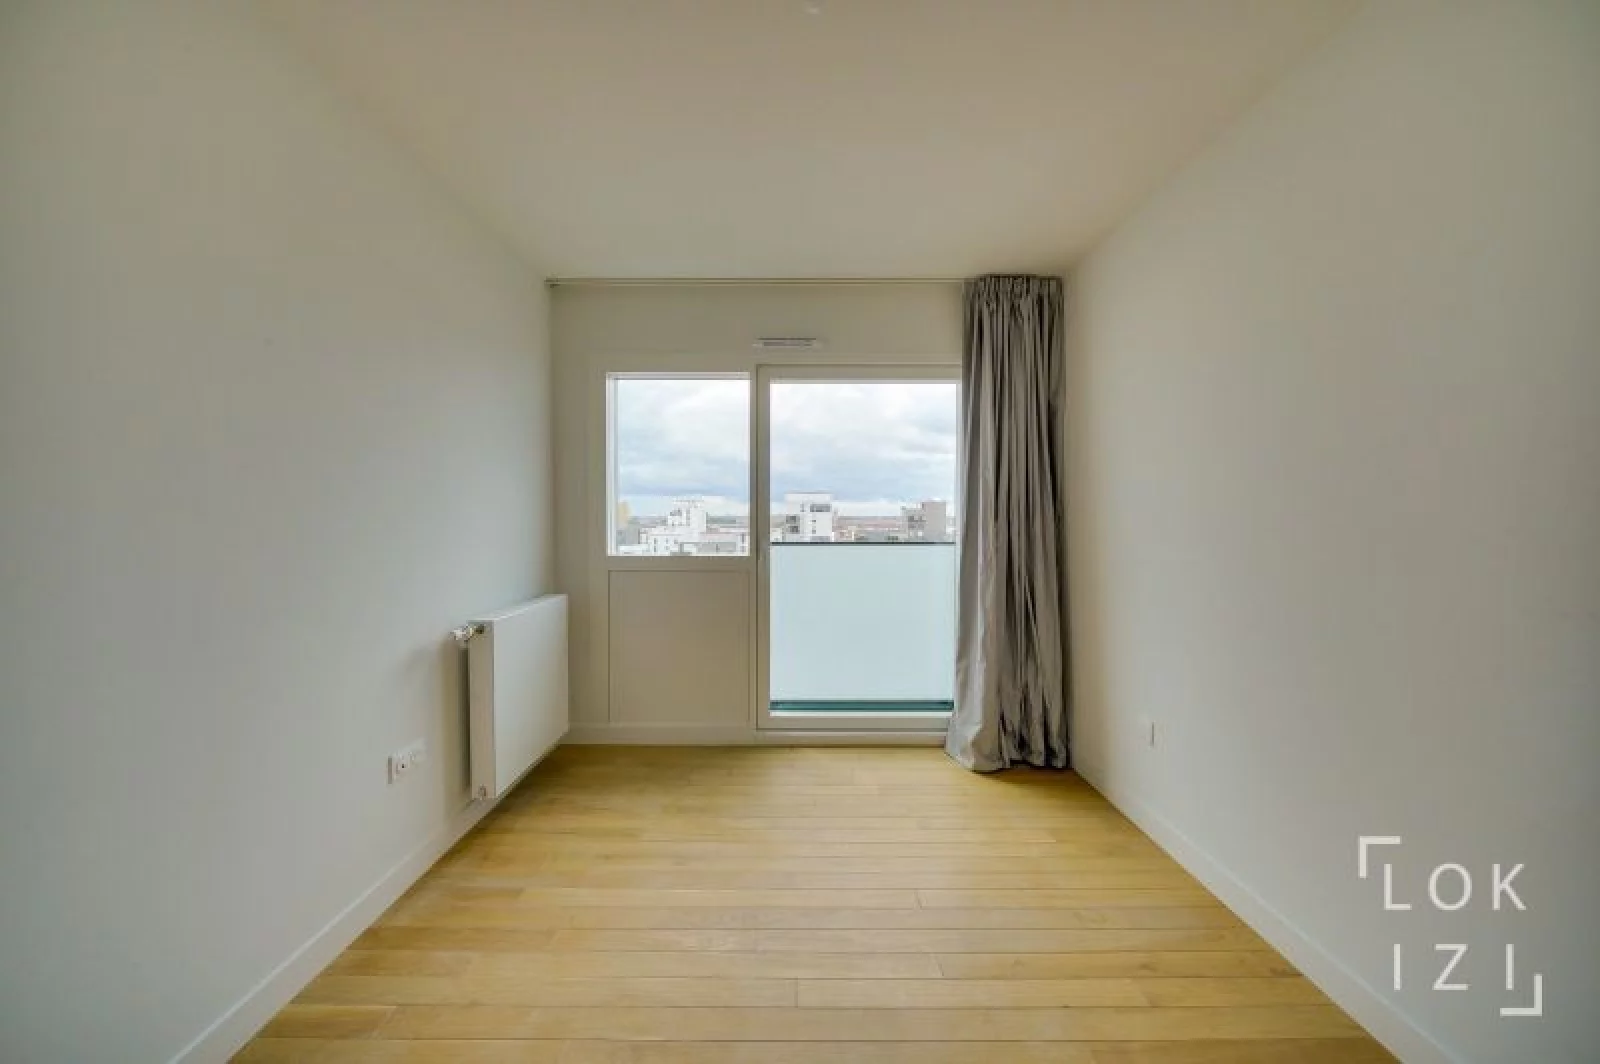 Vente appartement neuf T3 68m, terrasse, piscine (Bordeaux - Bassins  flot)